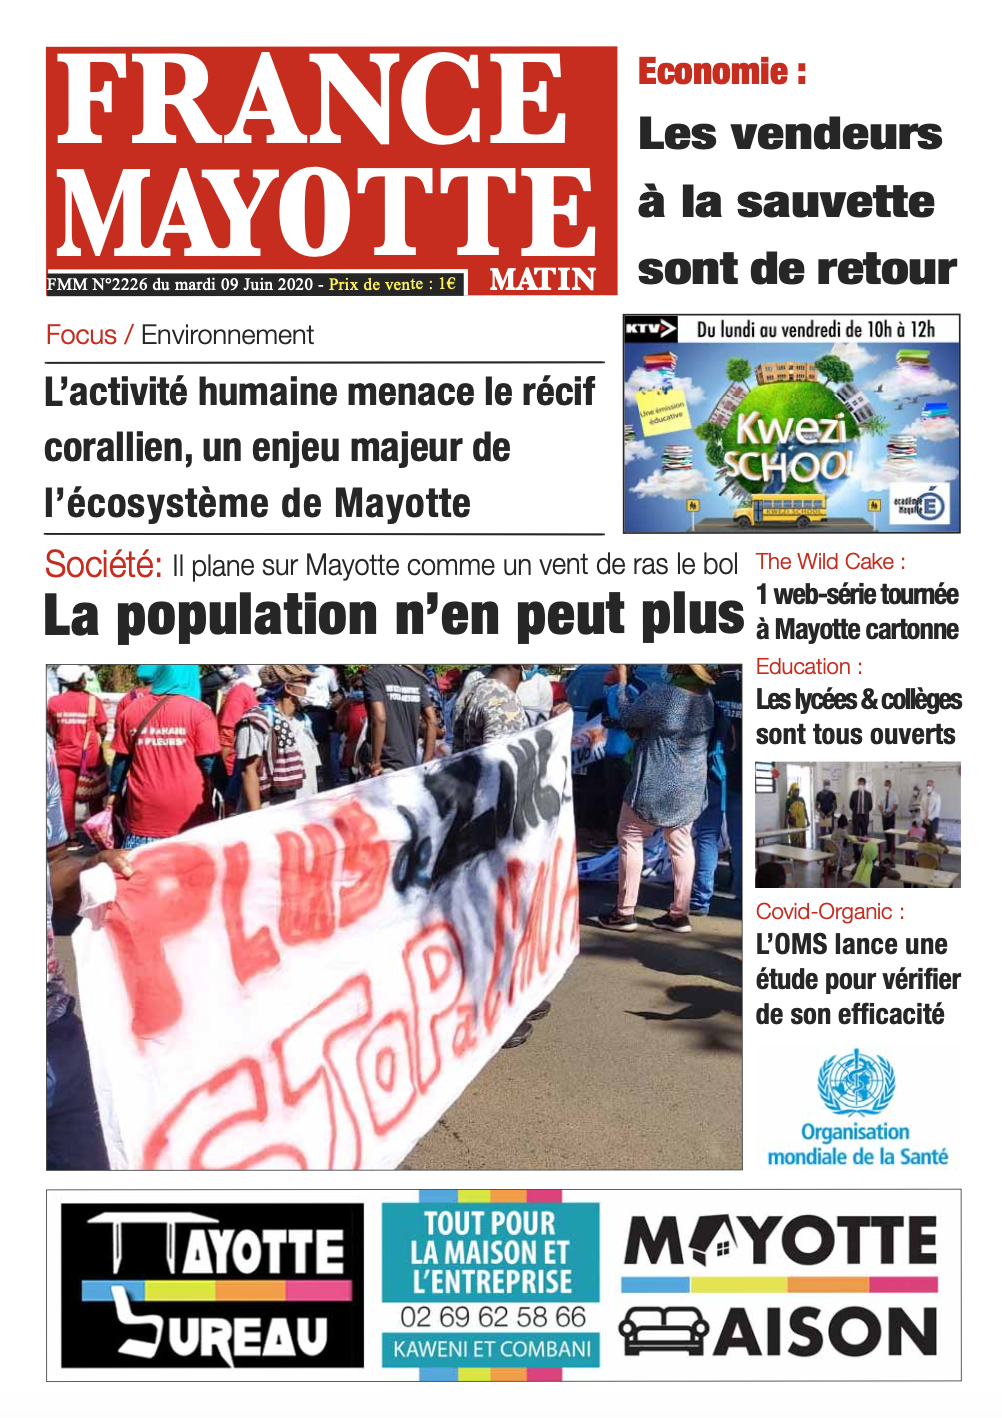 France Mayotte Mardi 9 juin 2020